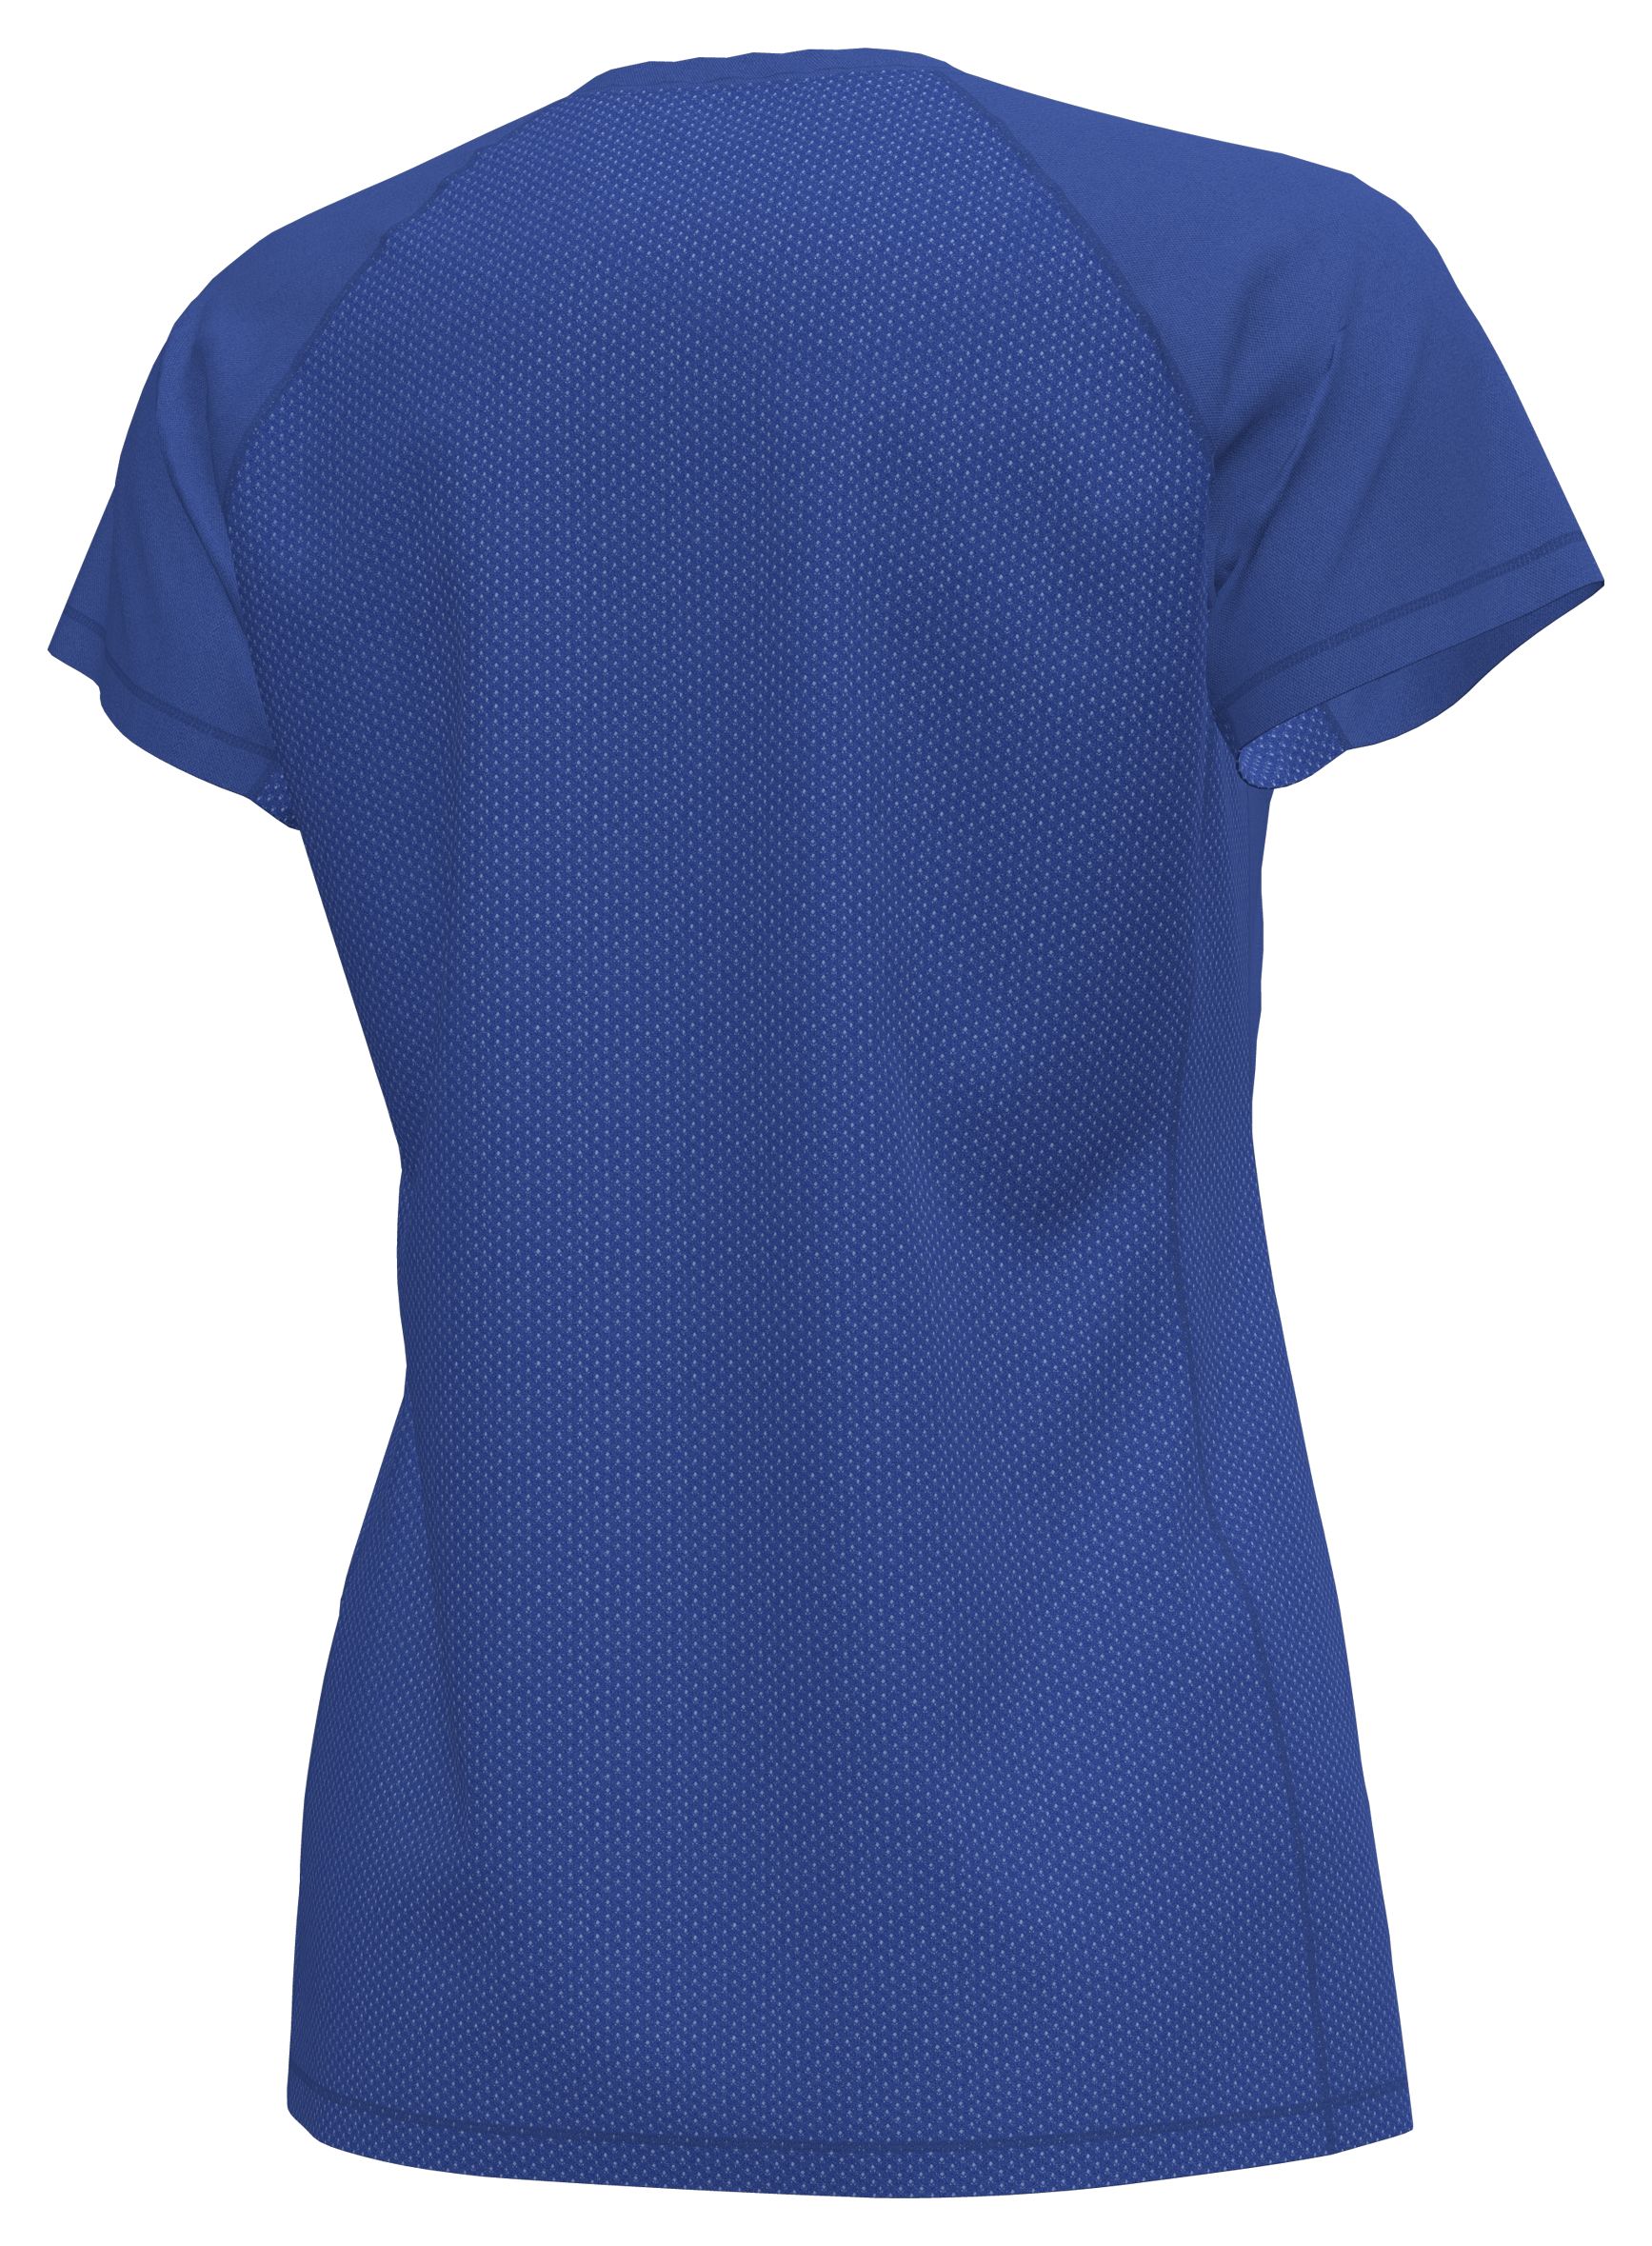 𝅺ZELOS Heathered Blue Lightweight Breezy Navy Stripe Active Running  T-Shirt Top